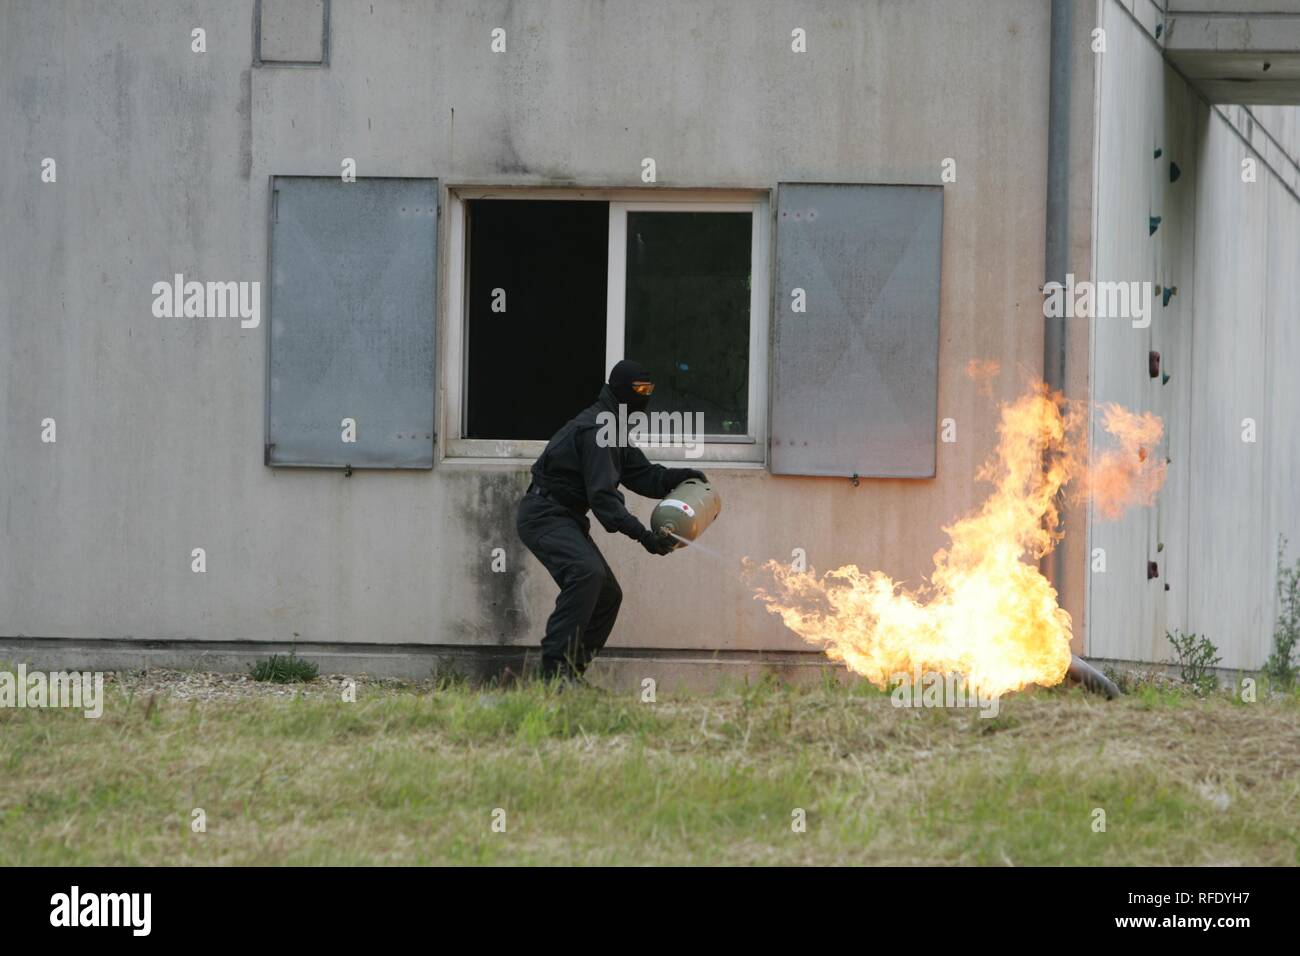 DEU Germania: Esercizio di un team SWAT Hemer su uno speciale addestramento delle forze di polizia di massa. Foto Stock